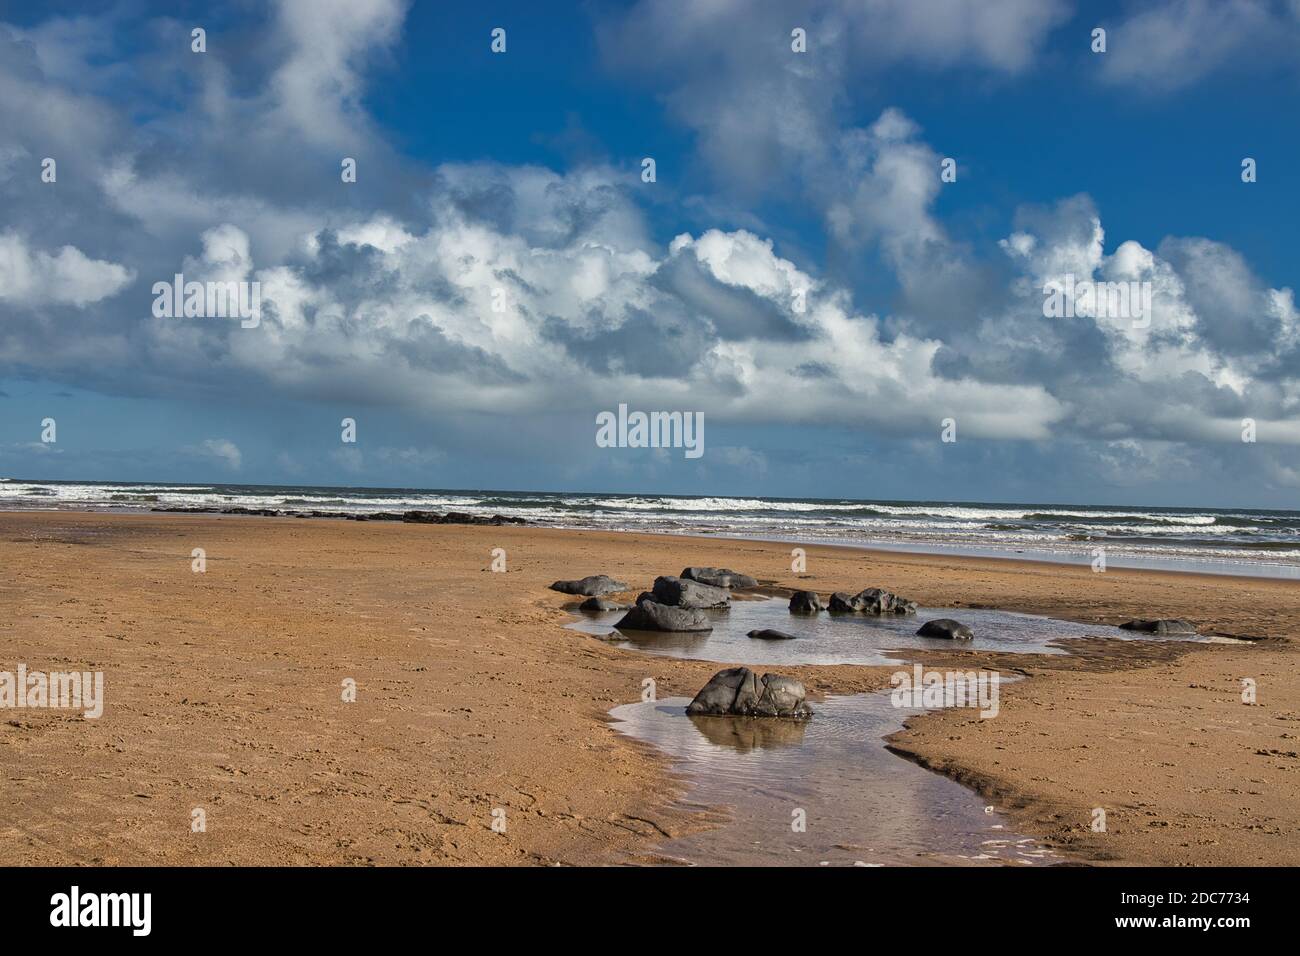 Rockpool on a Sandy Beach Stock Photo